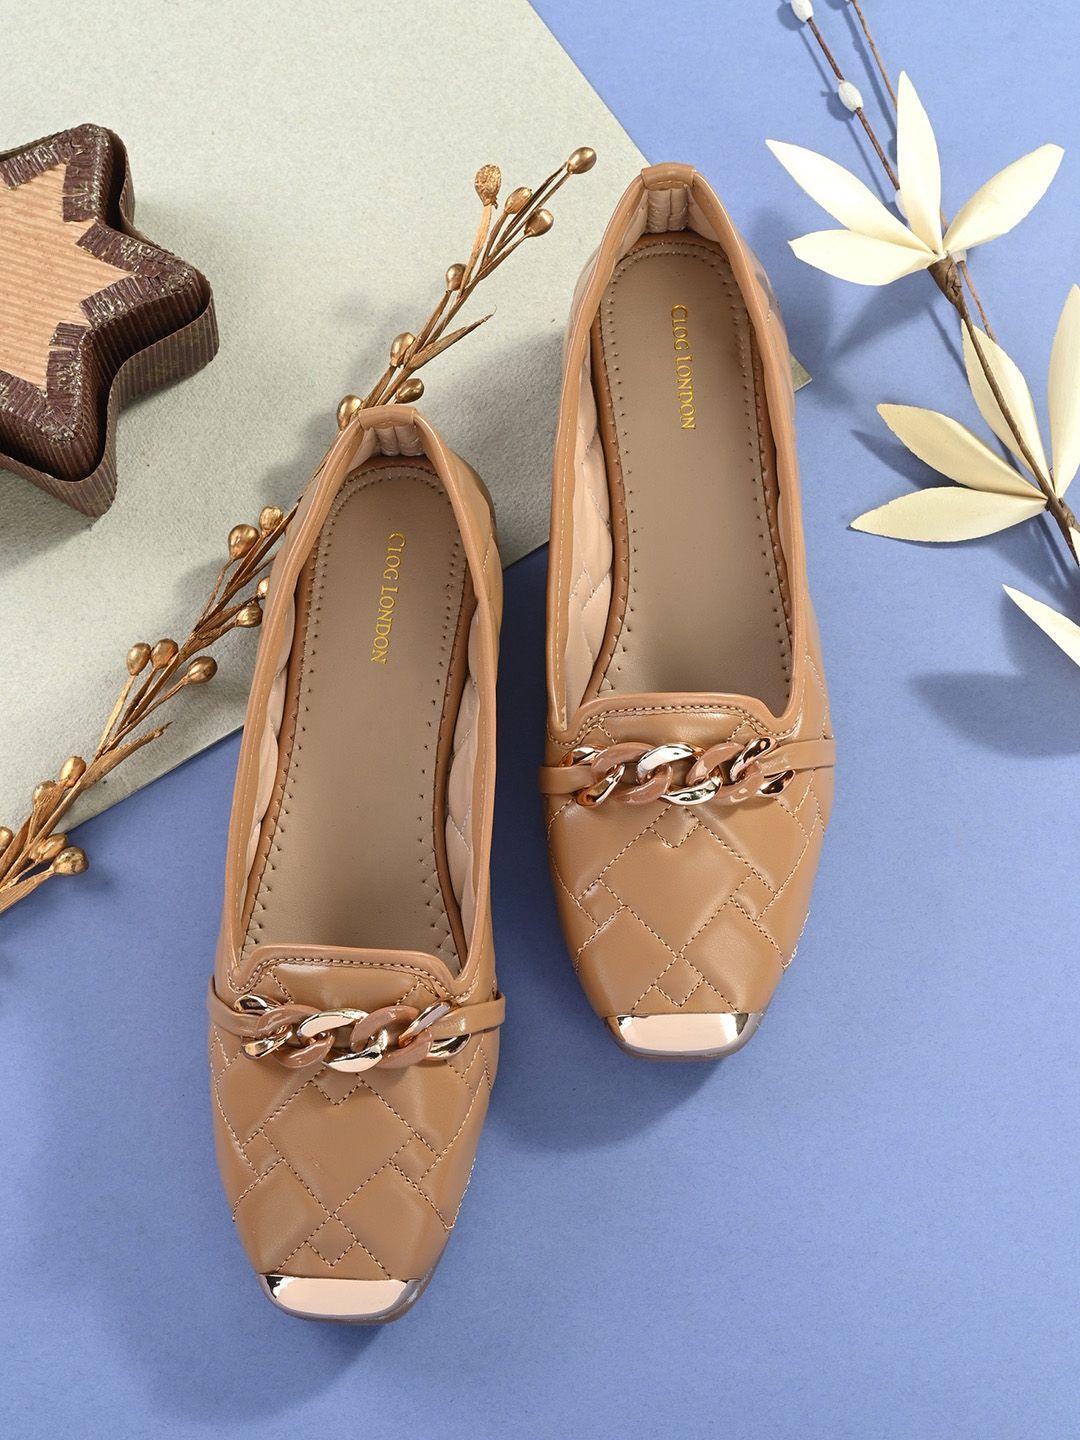 clog london textured embellished comfort heels pumps